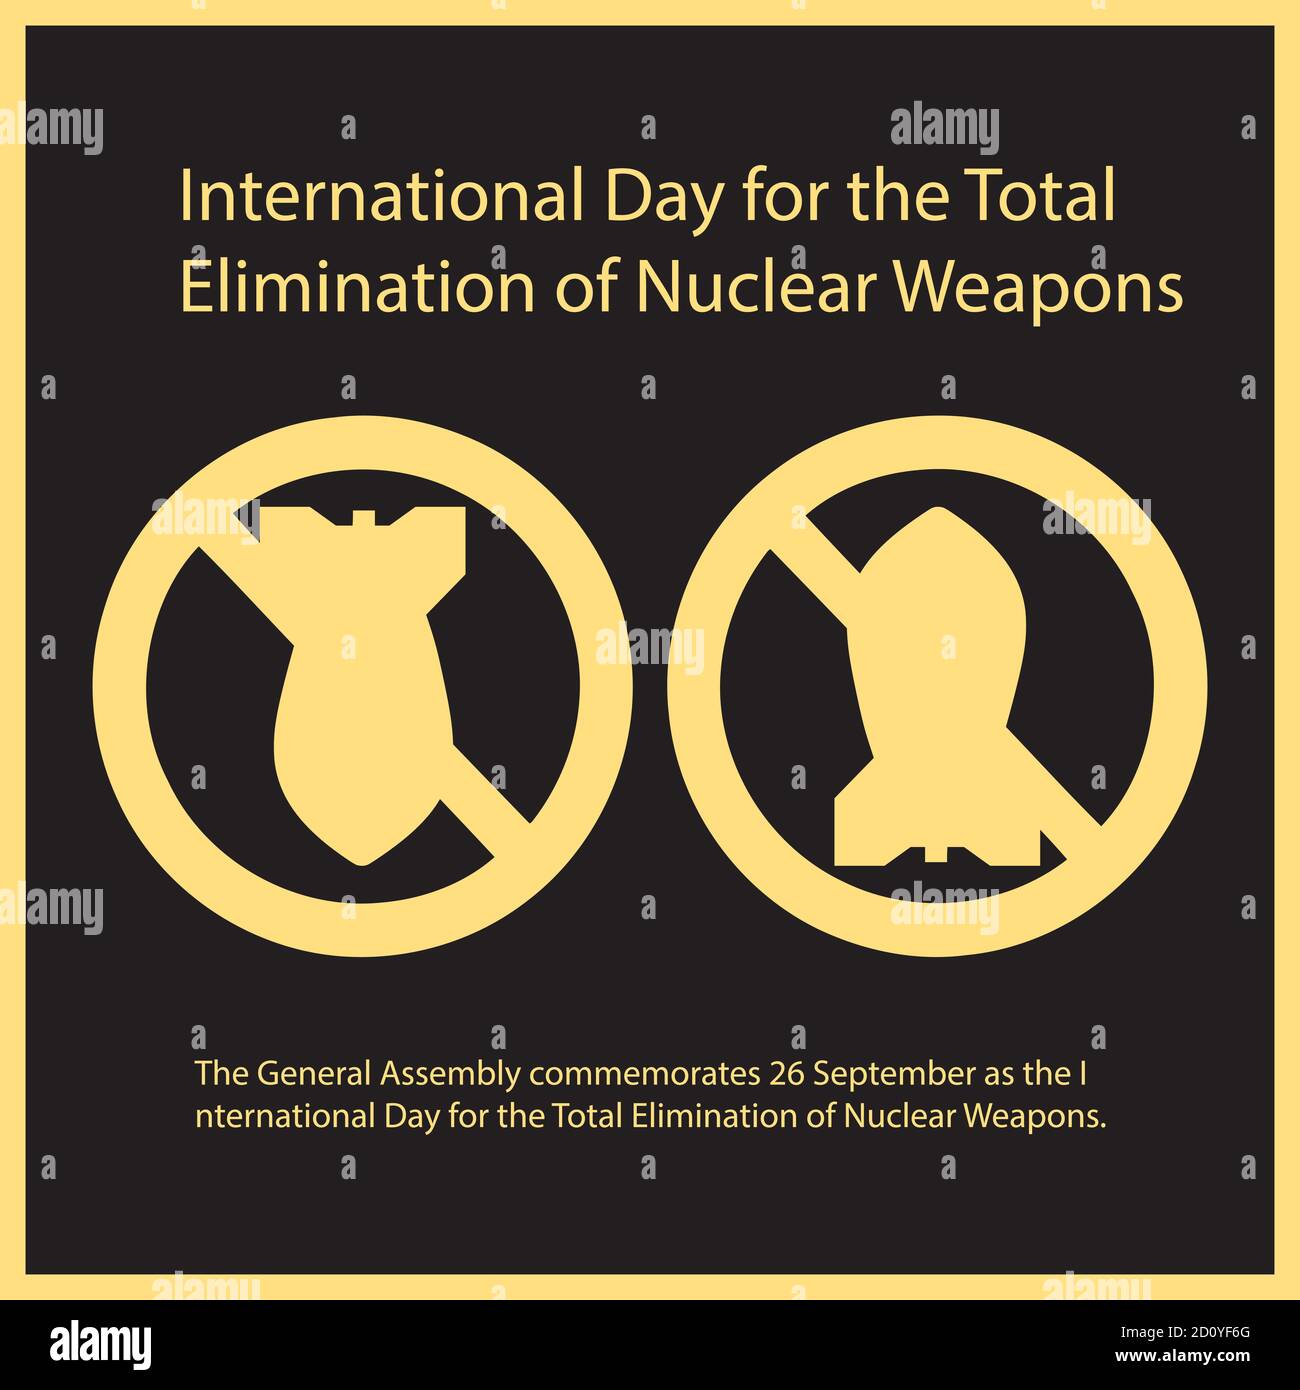 Die Generalversammlung erinnert an den 26. September als den Internationalen Tag für die vollständige Beseitigung von Atomwaffen. Stock Vektor